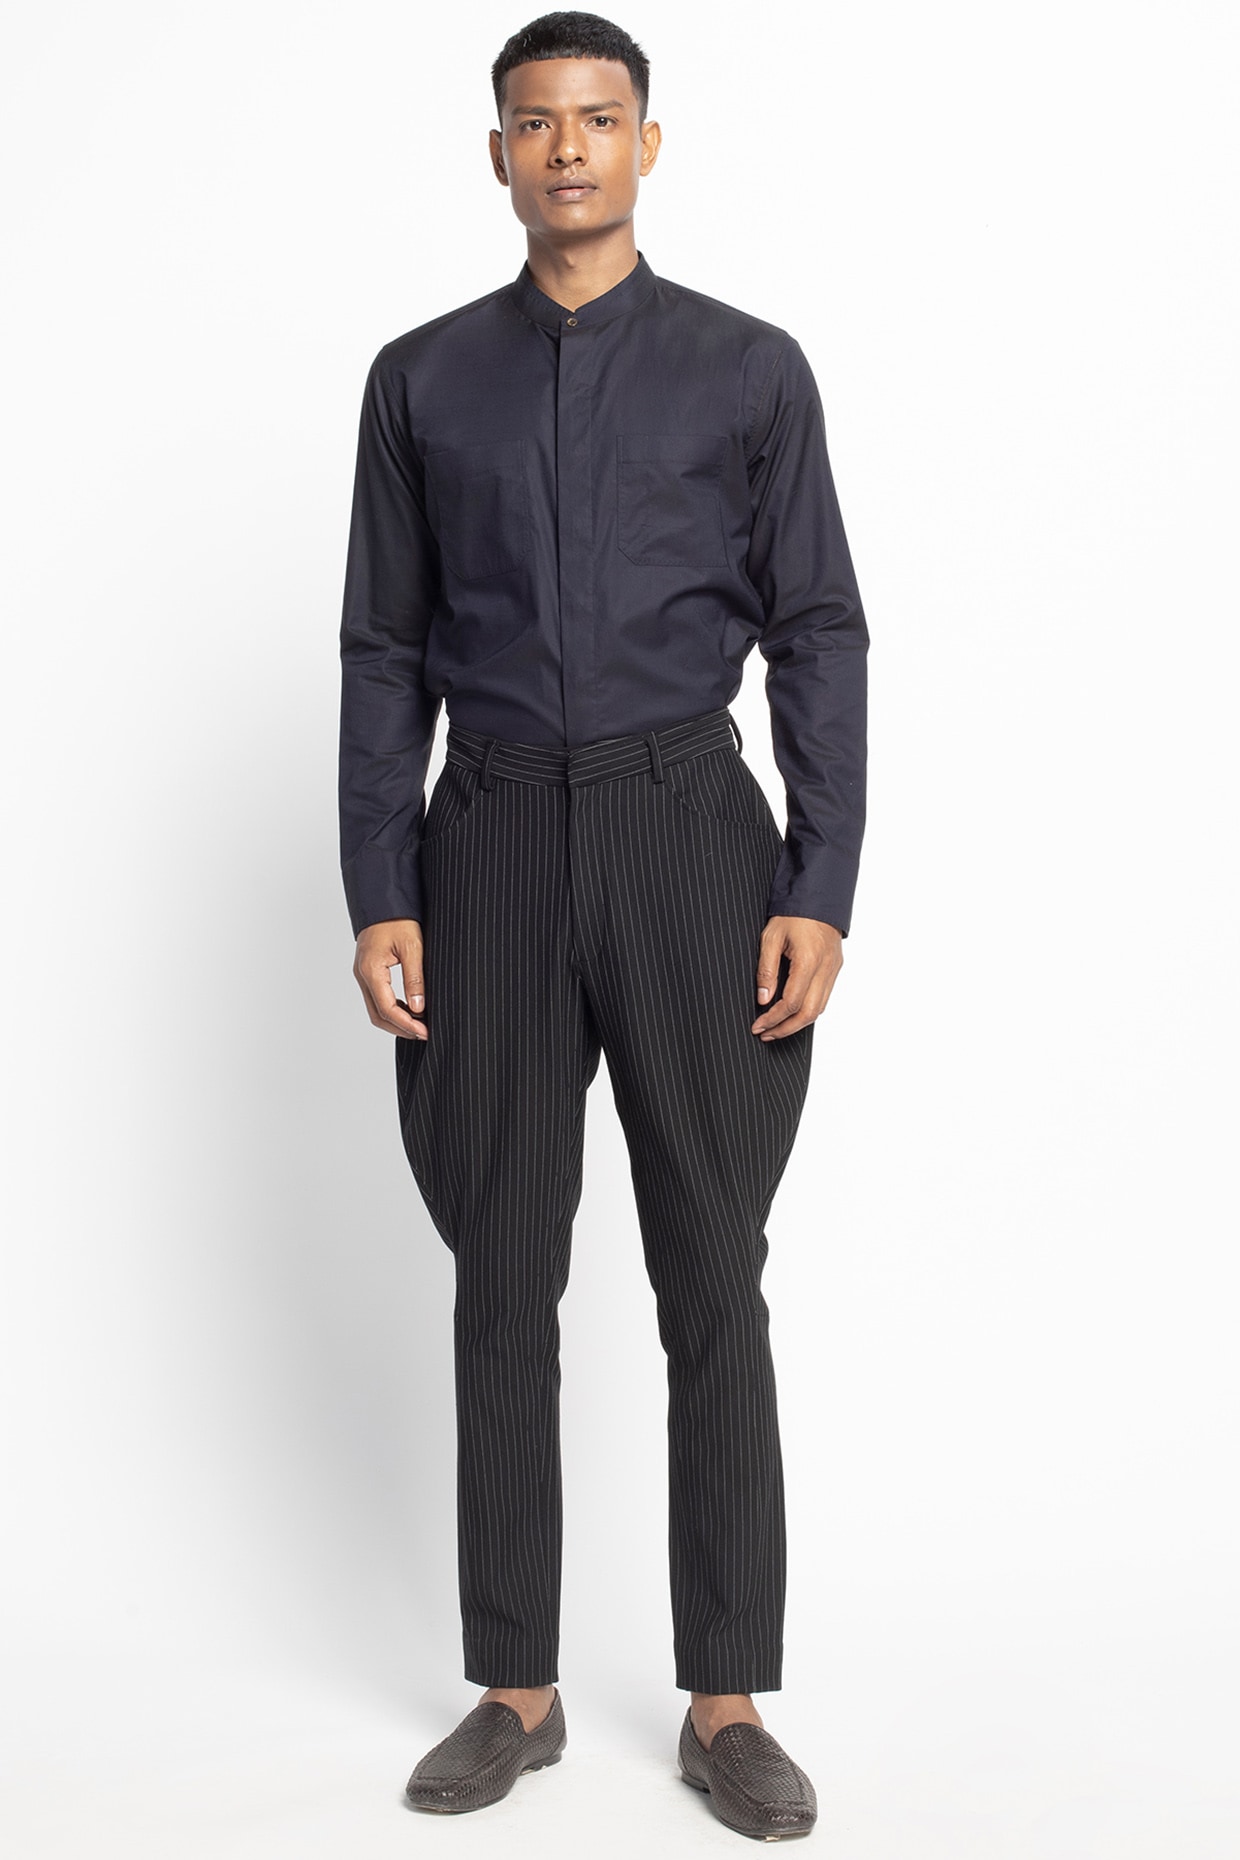 Mens Black Jodhpuri Suit Groomsmen Wedding Dinner Party Wear Slim Fit Coat  Pants | eBay